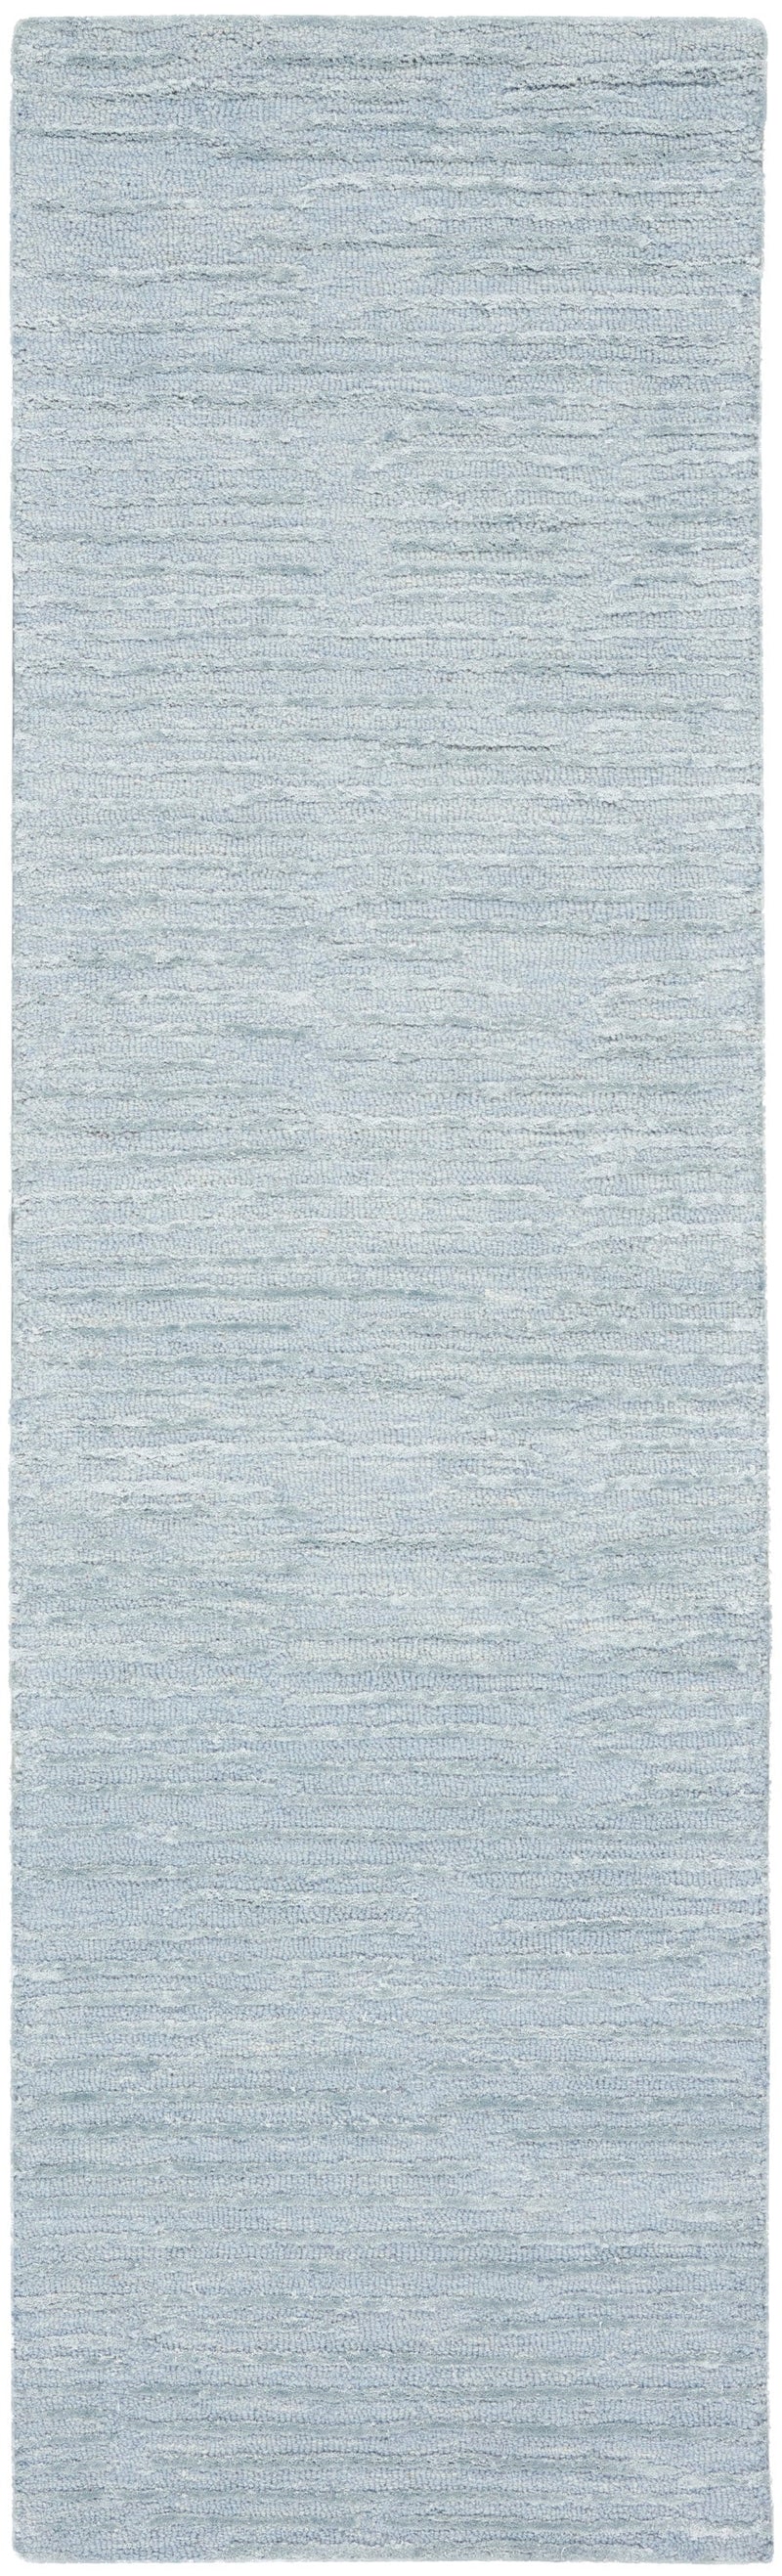 media image for ck010 linear handmade light blue rug by nourison 99446879950 redo 2 290